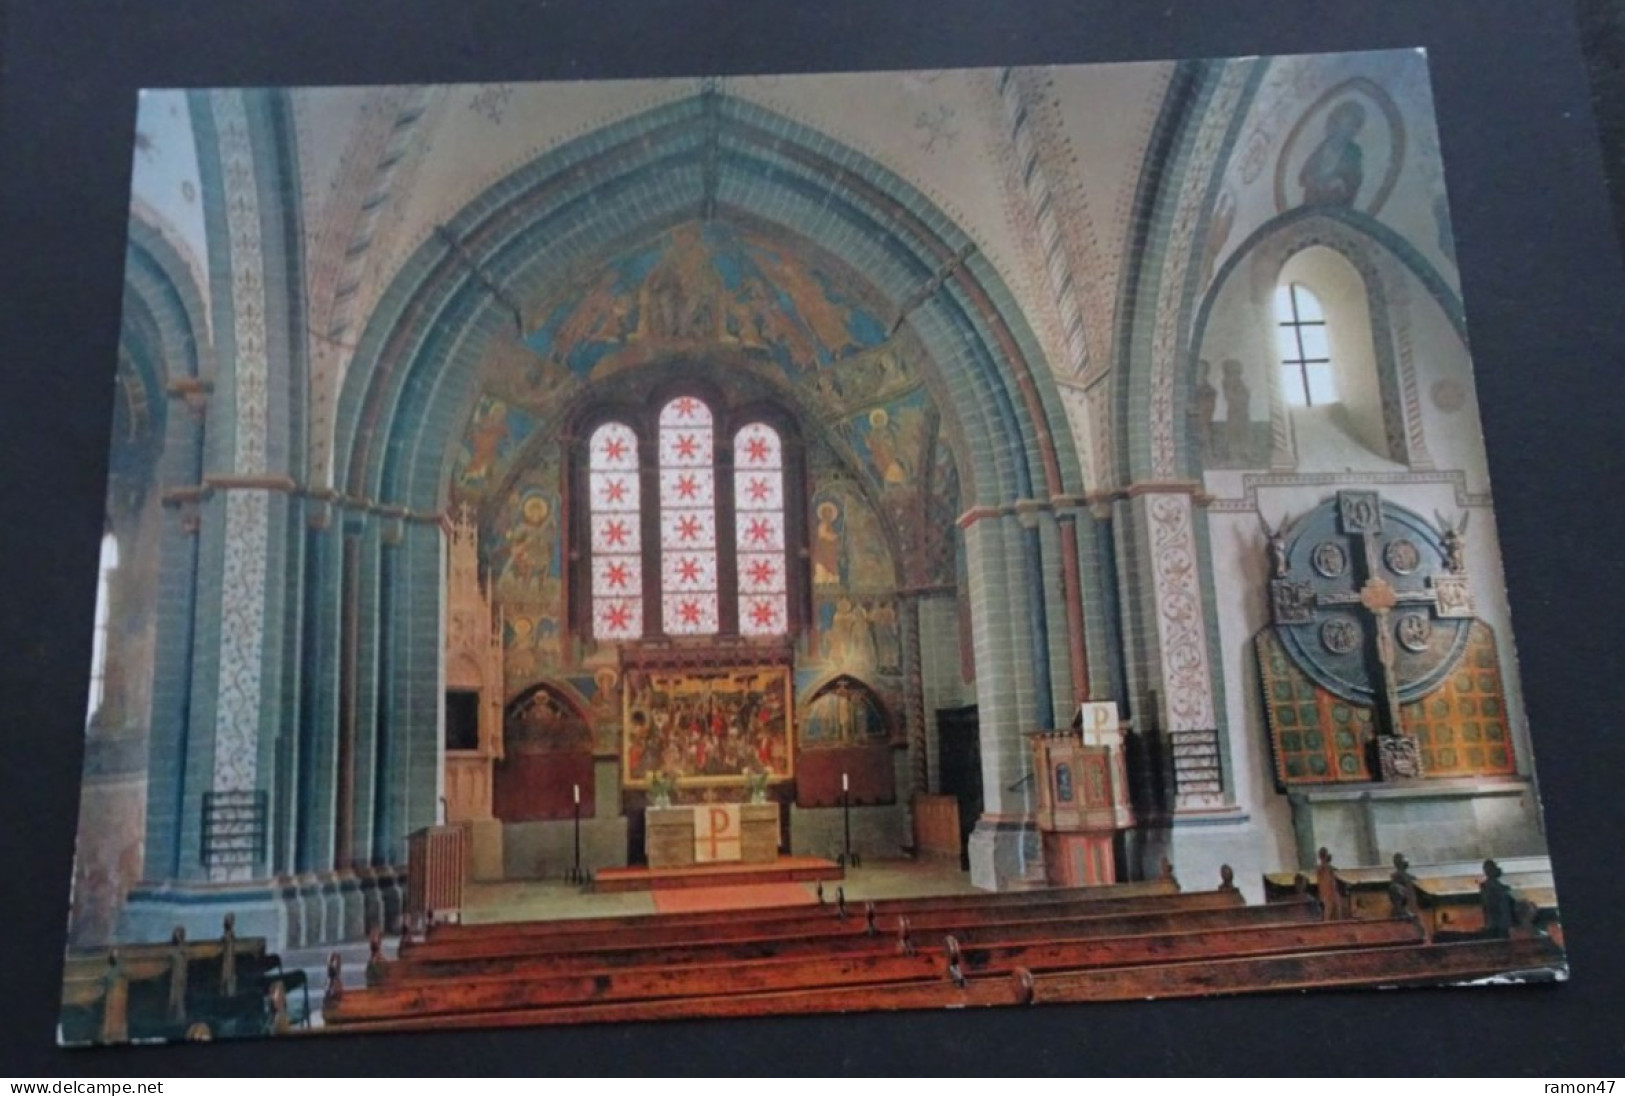 Soest, Die Mittelalterliche Stadt - Evang. Kirche St. Maria Zur Höhe - Seit 1920 Dülberg-Kirchenkarten, Soest - Kirchen U. Kathedralen